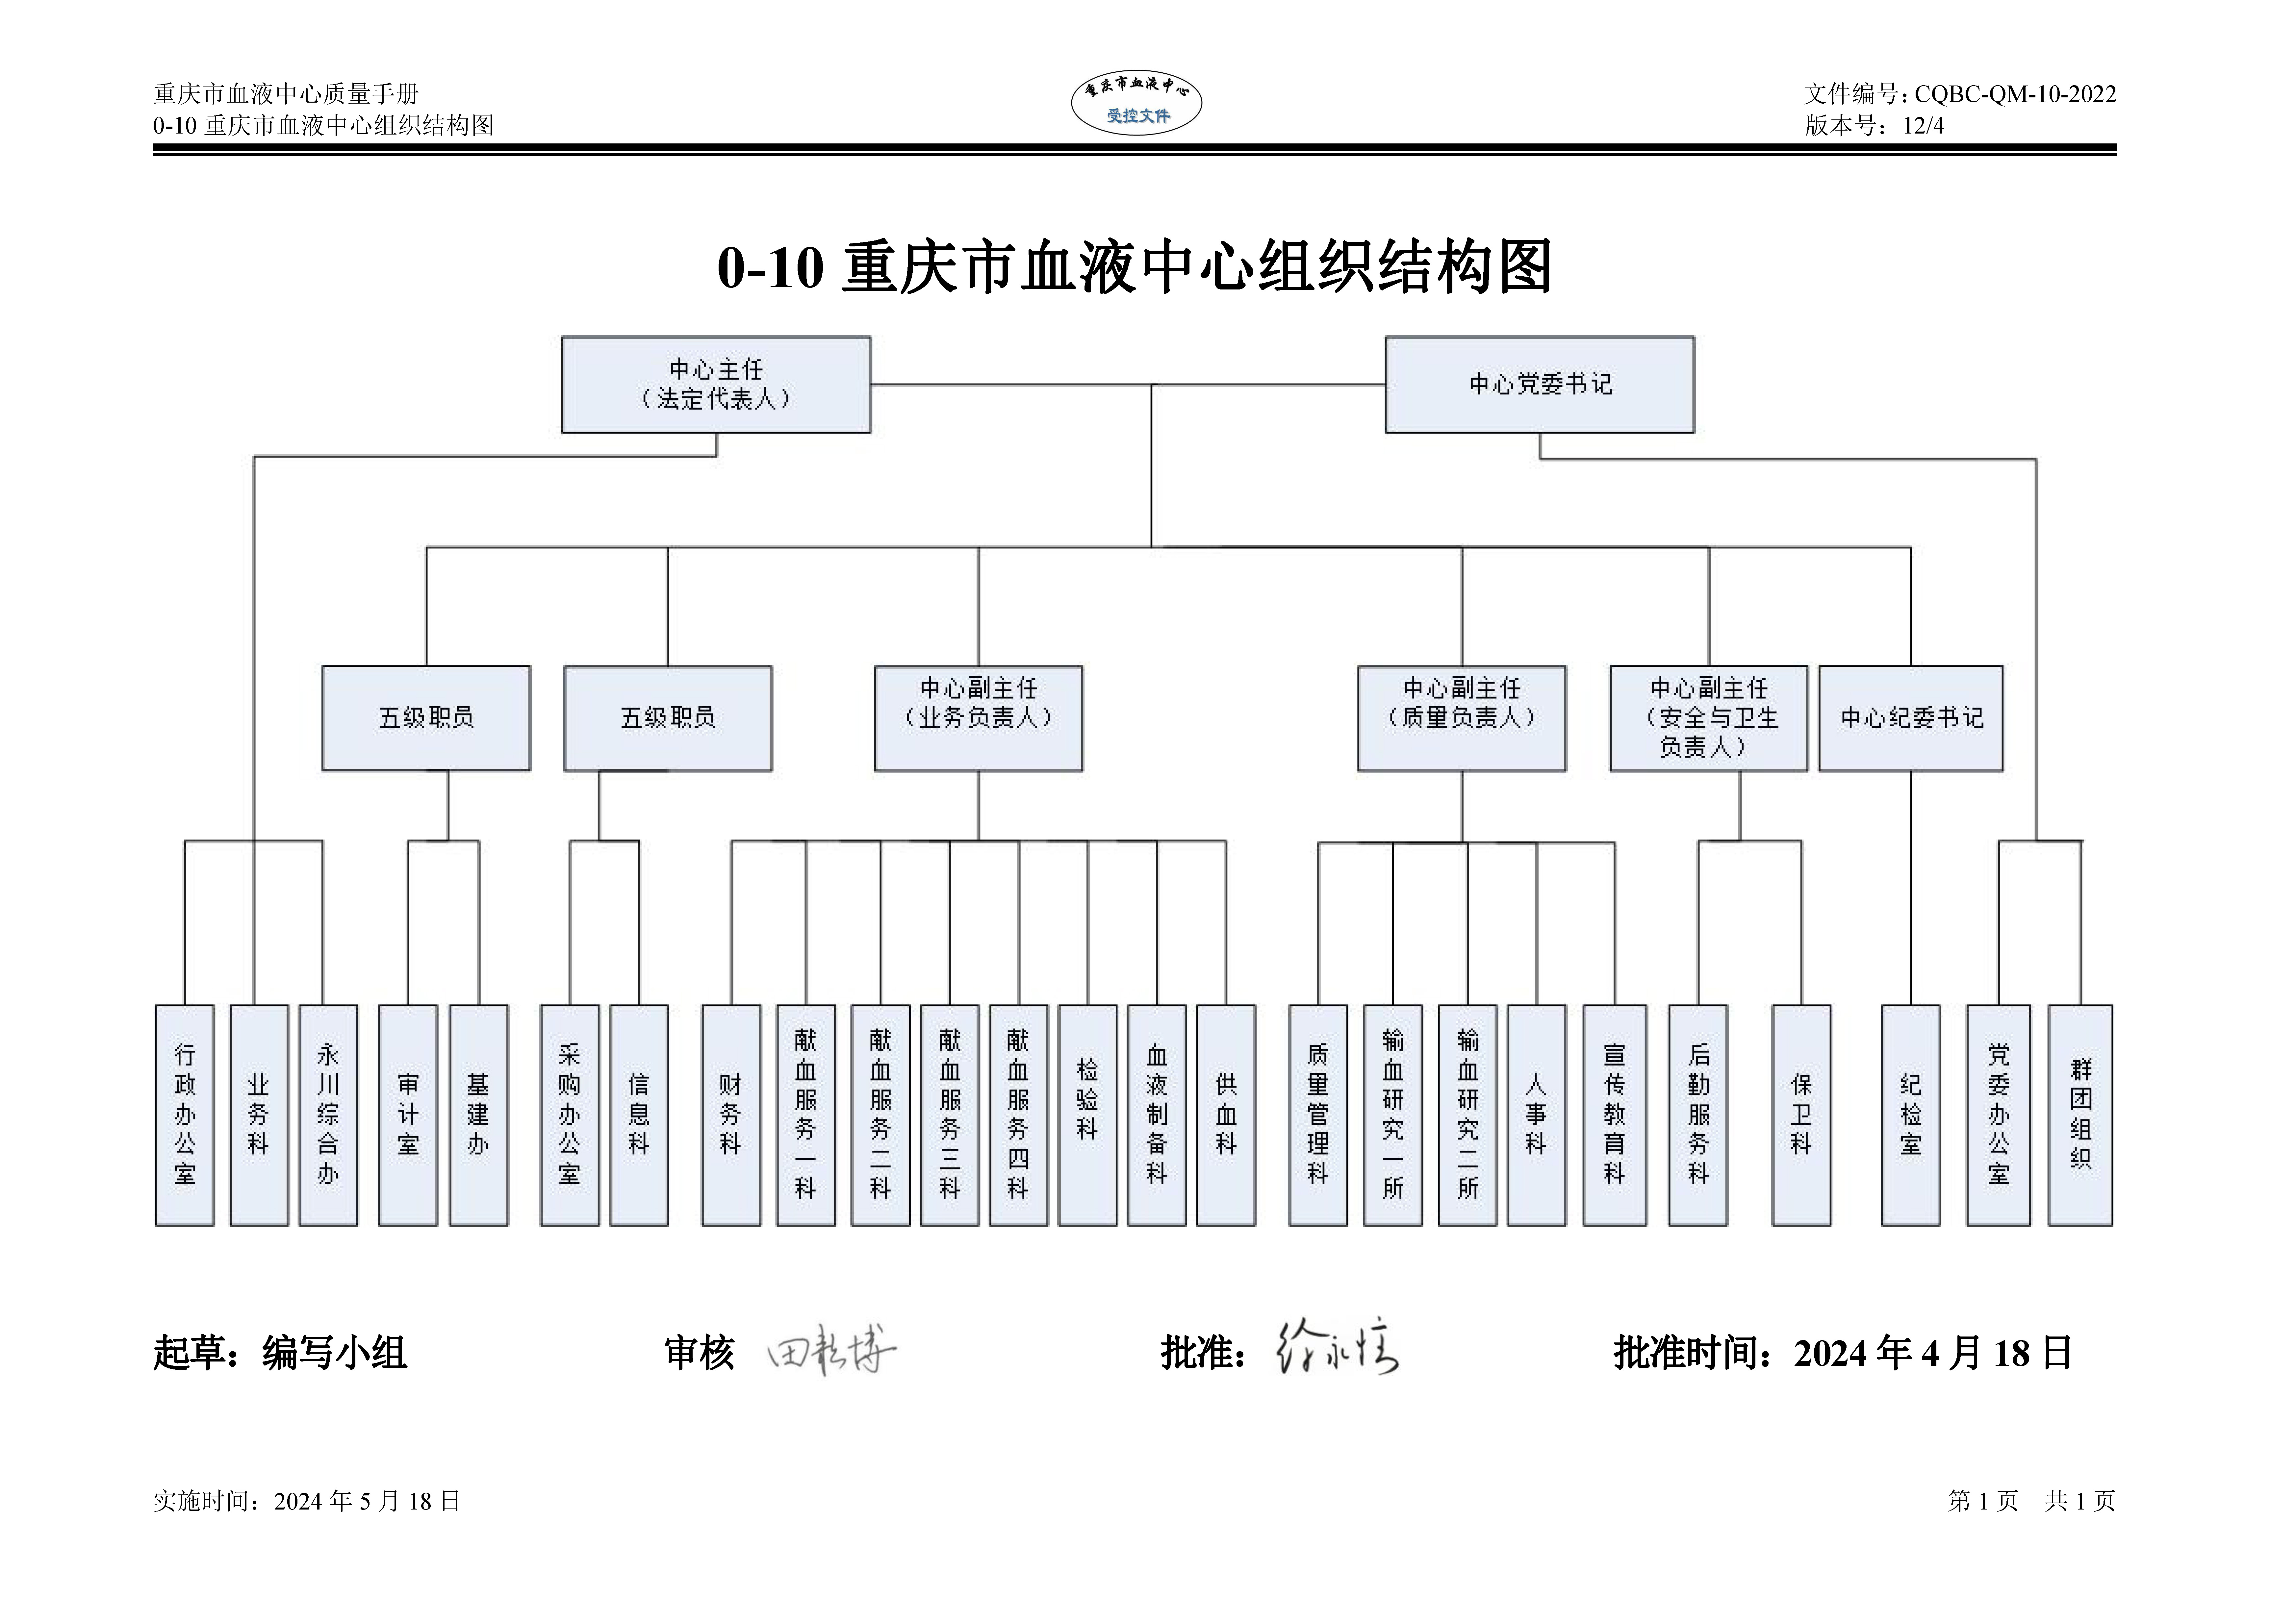 0-10 重庆市血液中心组织结构图.jpg